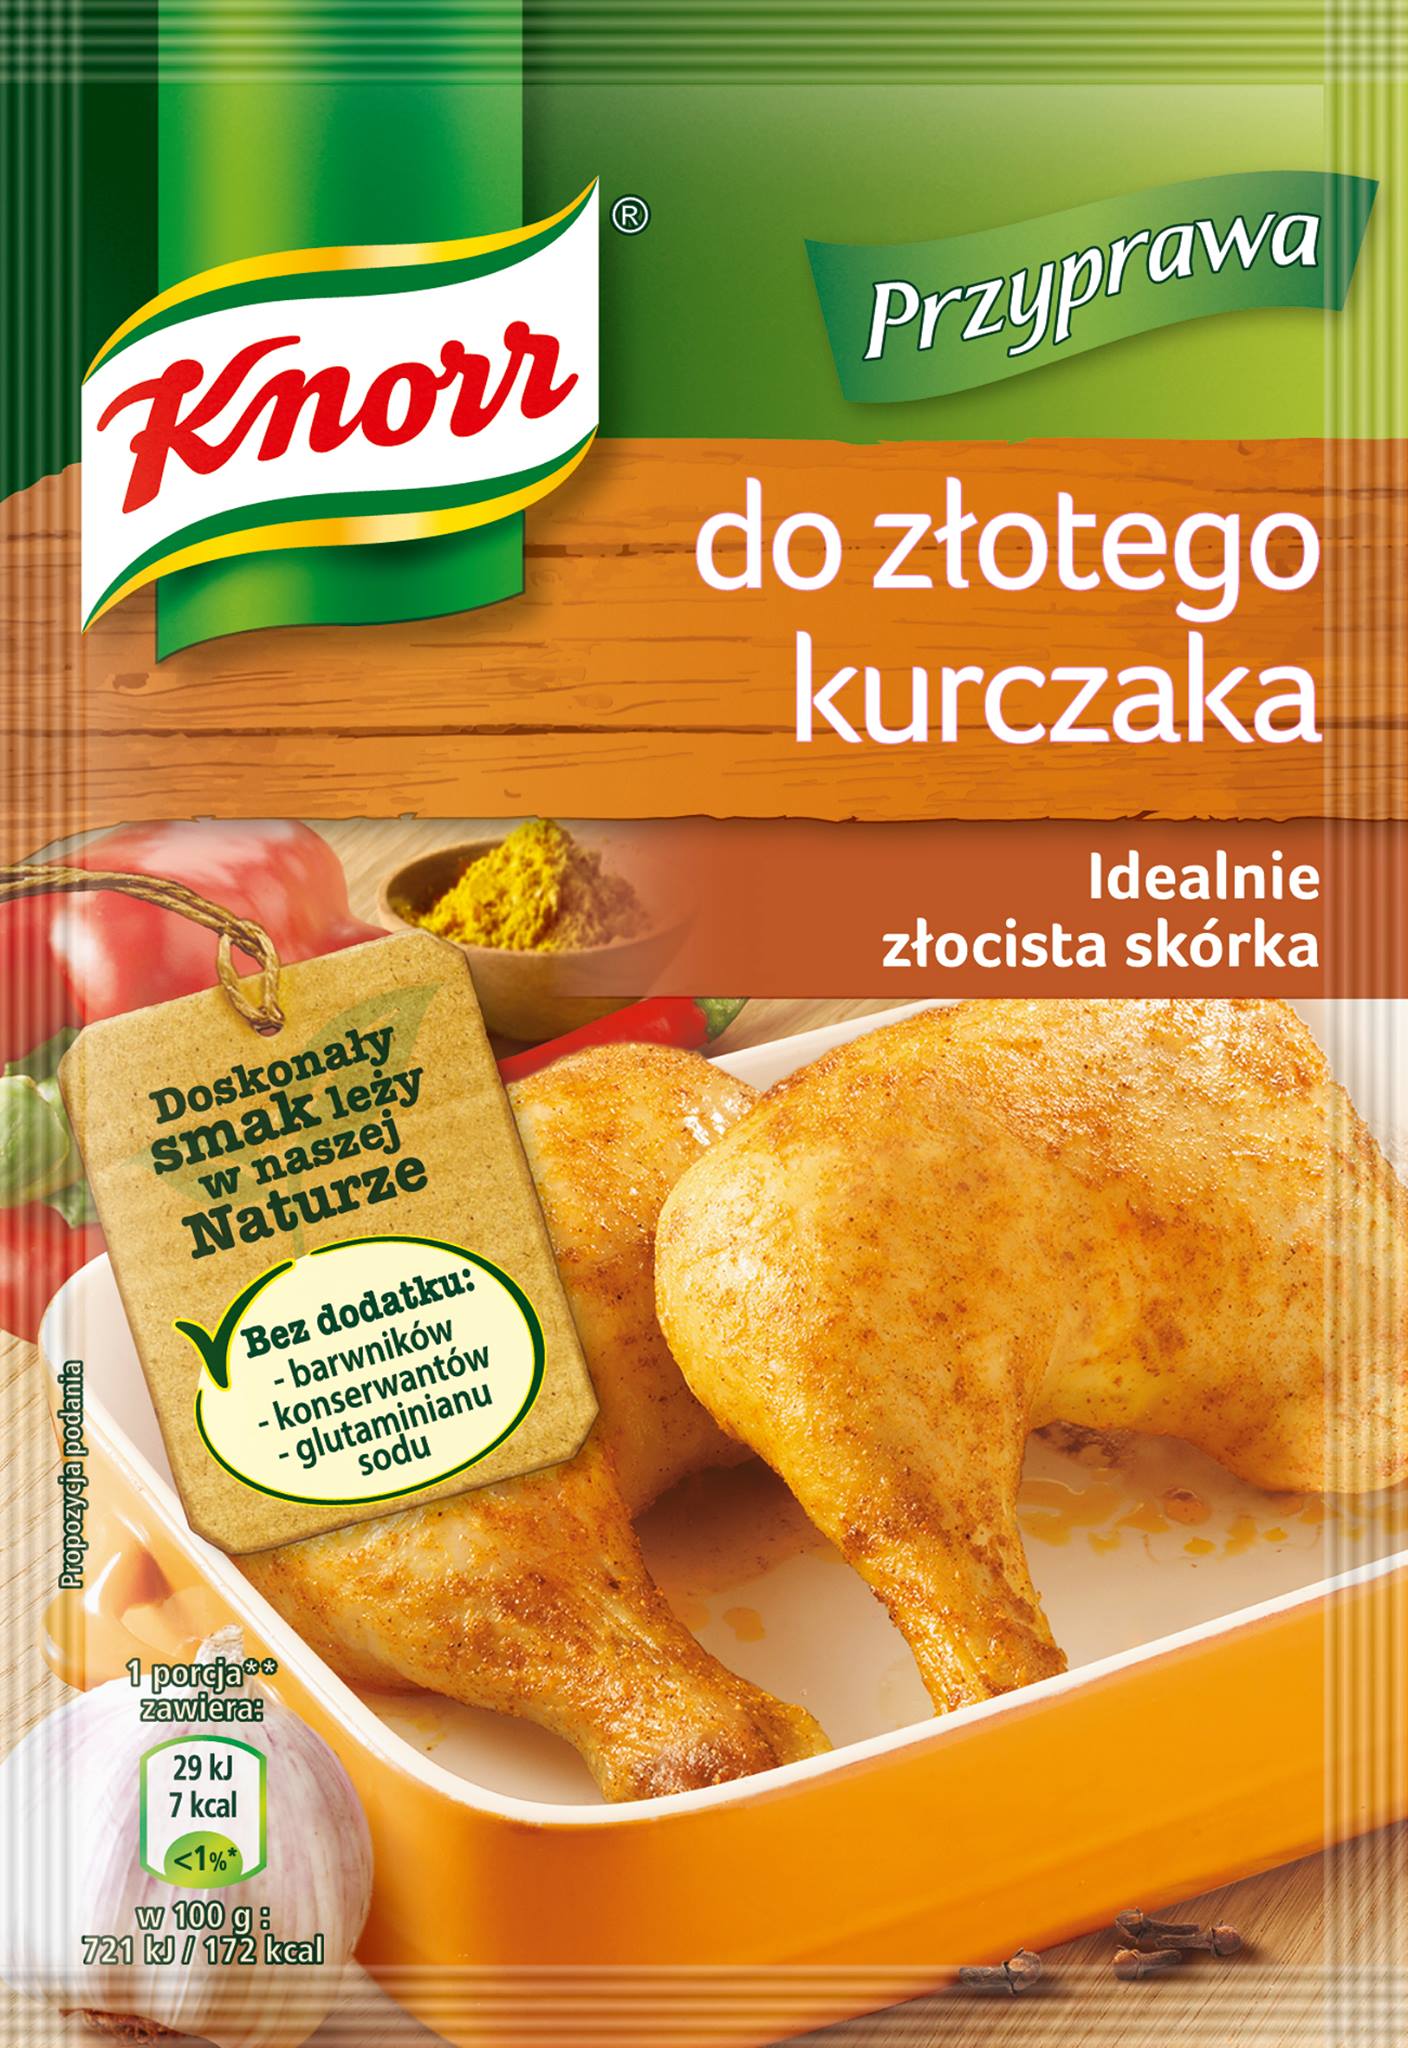 Knorr – bez barwników, konserwantów i glutaminianu